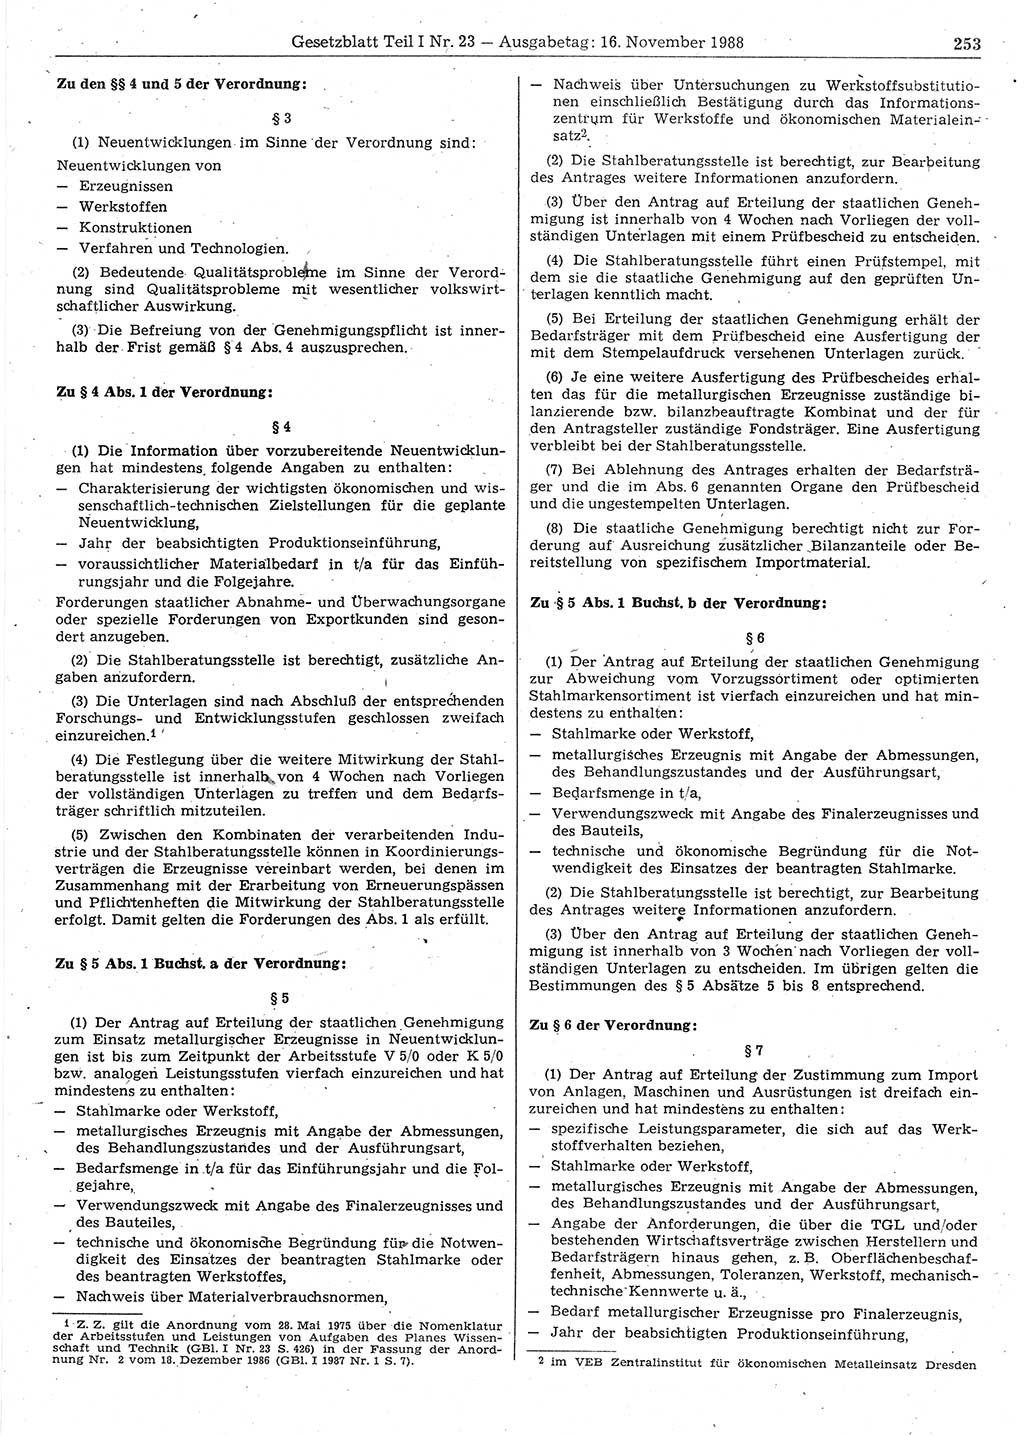 Gesetzblatt (GBl.) der Deutschen Demokratischen Republik (DDR) Teil Ⅰ 1988, Seite 253 (GBl. DDR Ⅰ 1988, S. 253)